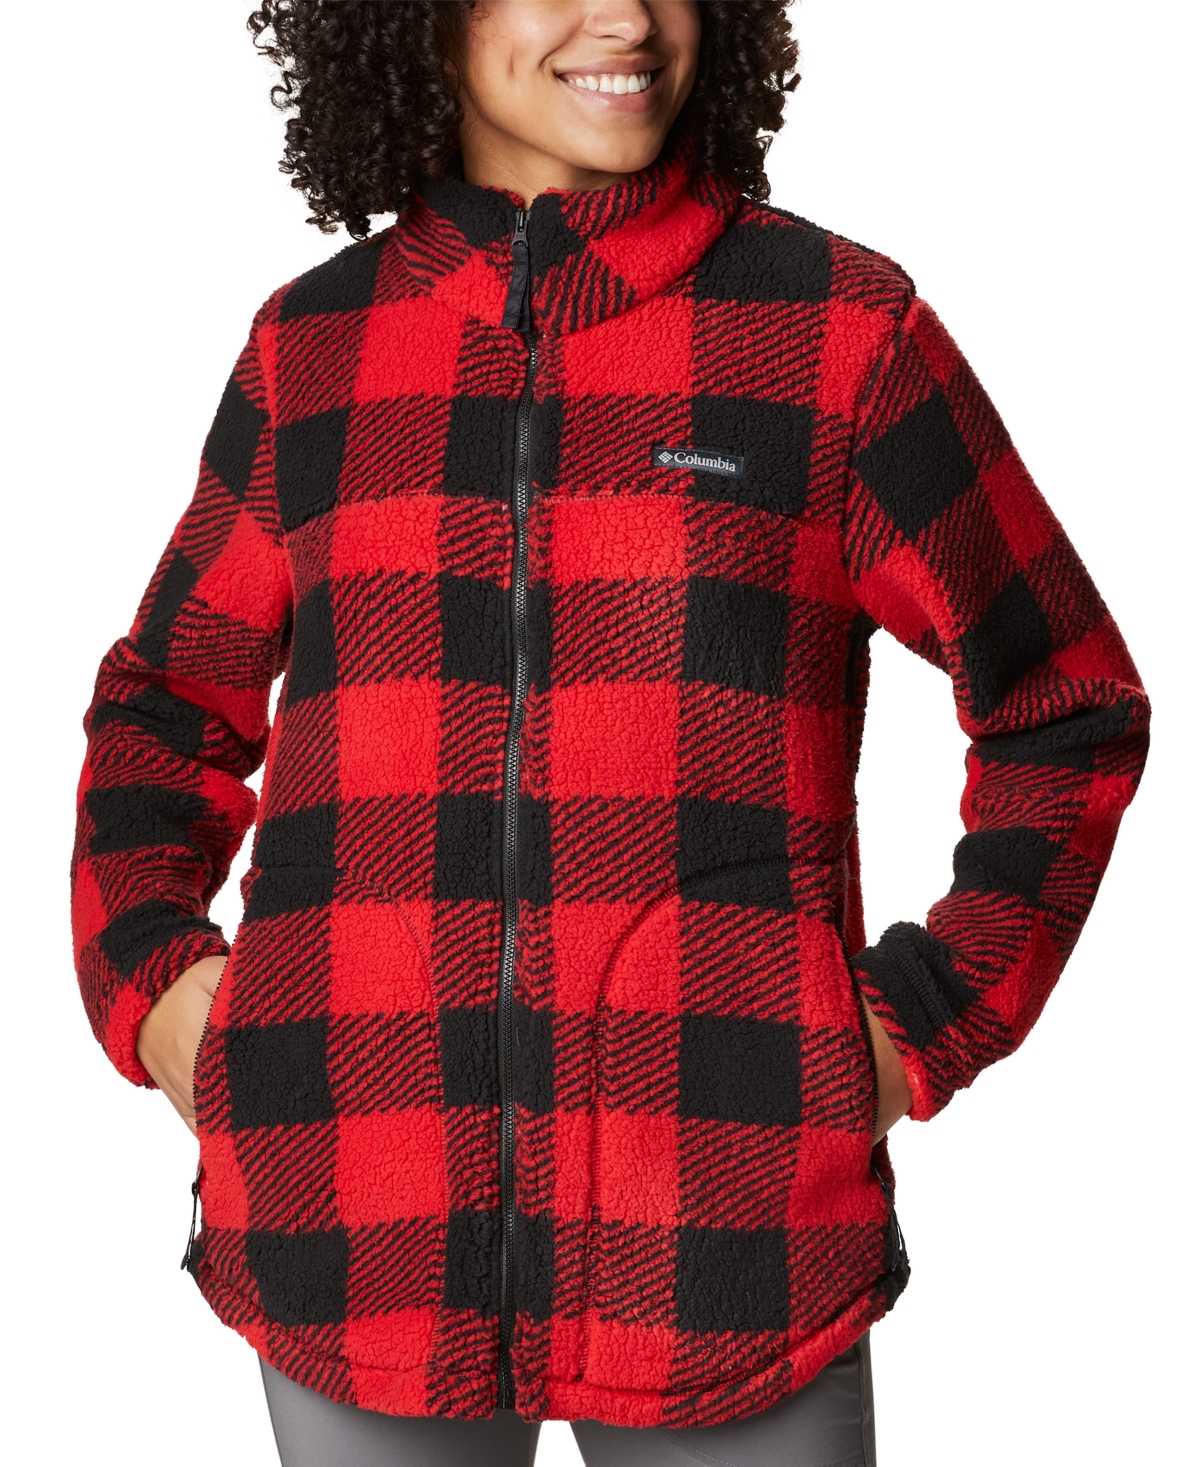 Columbia Women's West Bend Full Zip Fleece Jacket In Red Lily Check